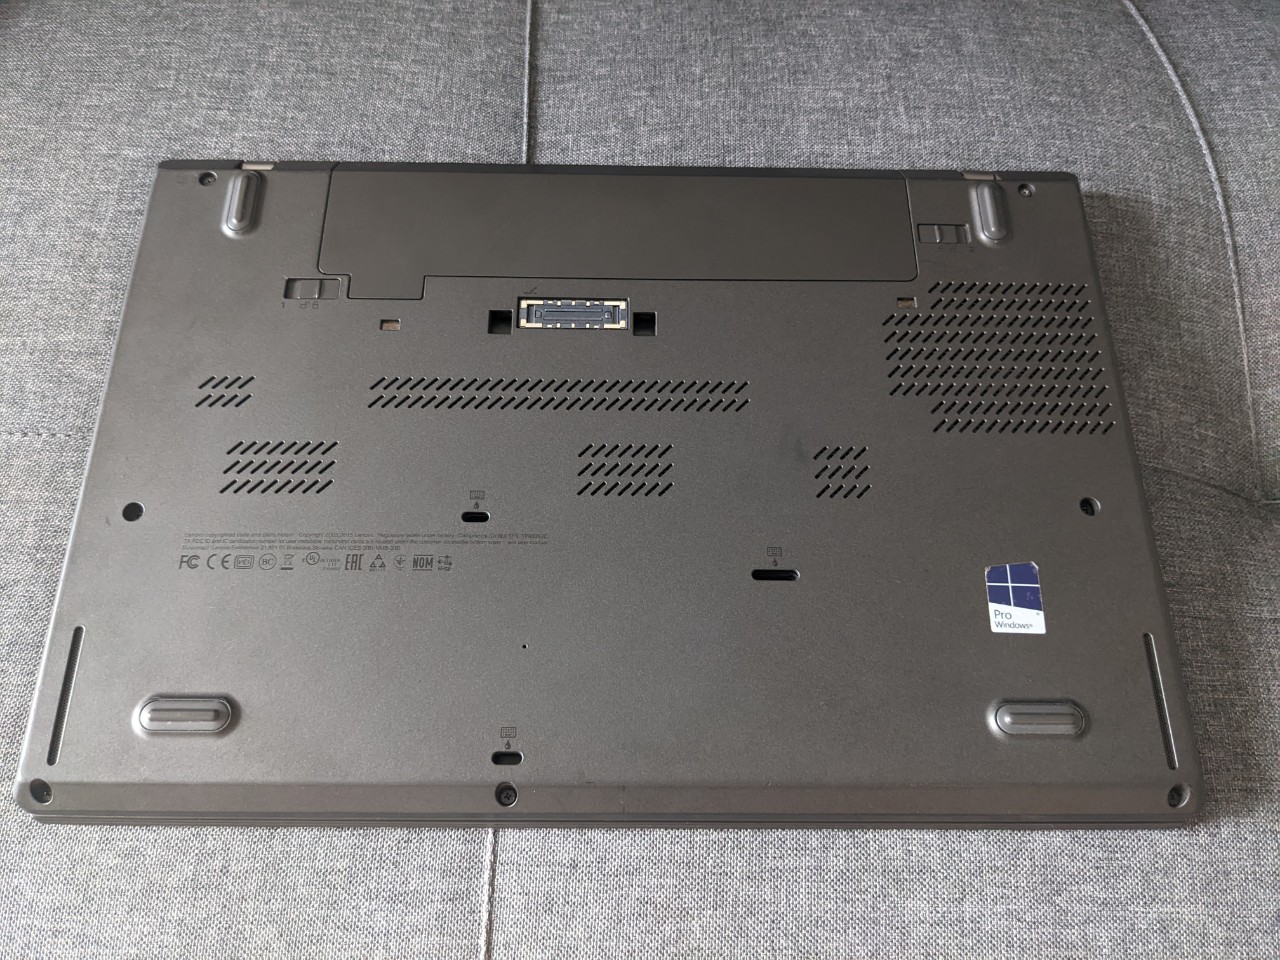 Lenovo Thinkpad T460 - 3TQ Laptop - Chuyên Sỉ Lẻ Laptop US Quận 9, Thủ Đức,  Bình Dương, Đồng Nai